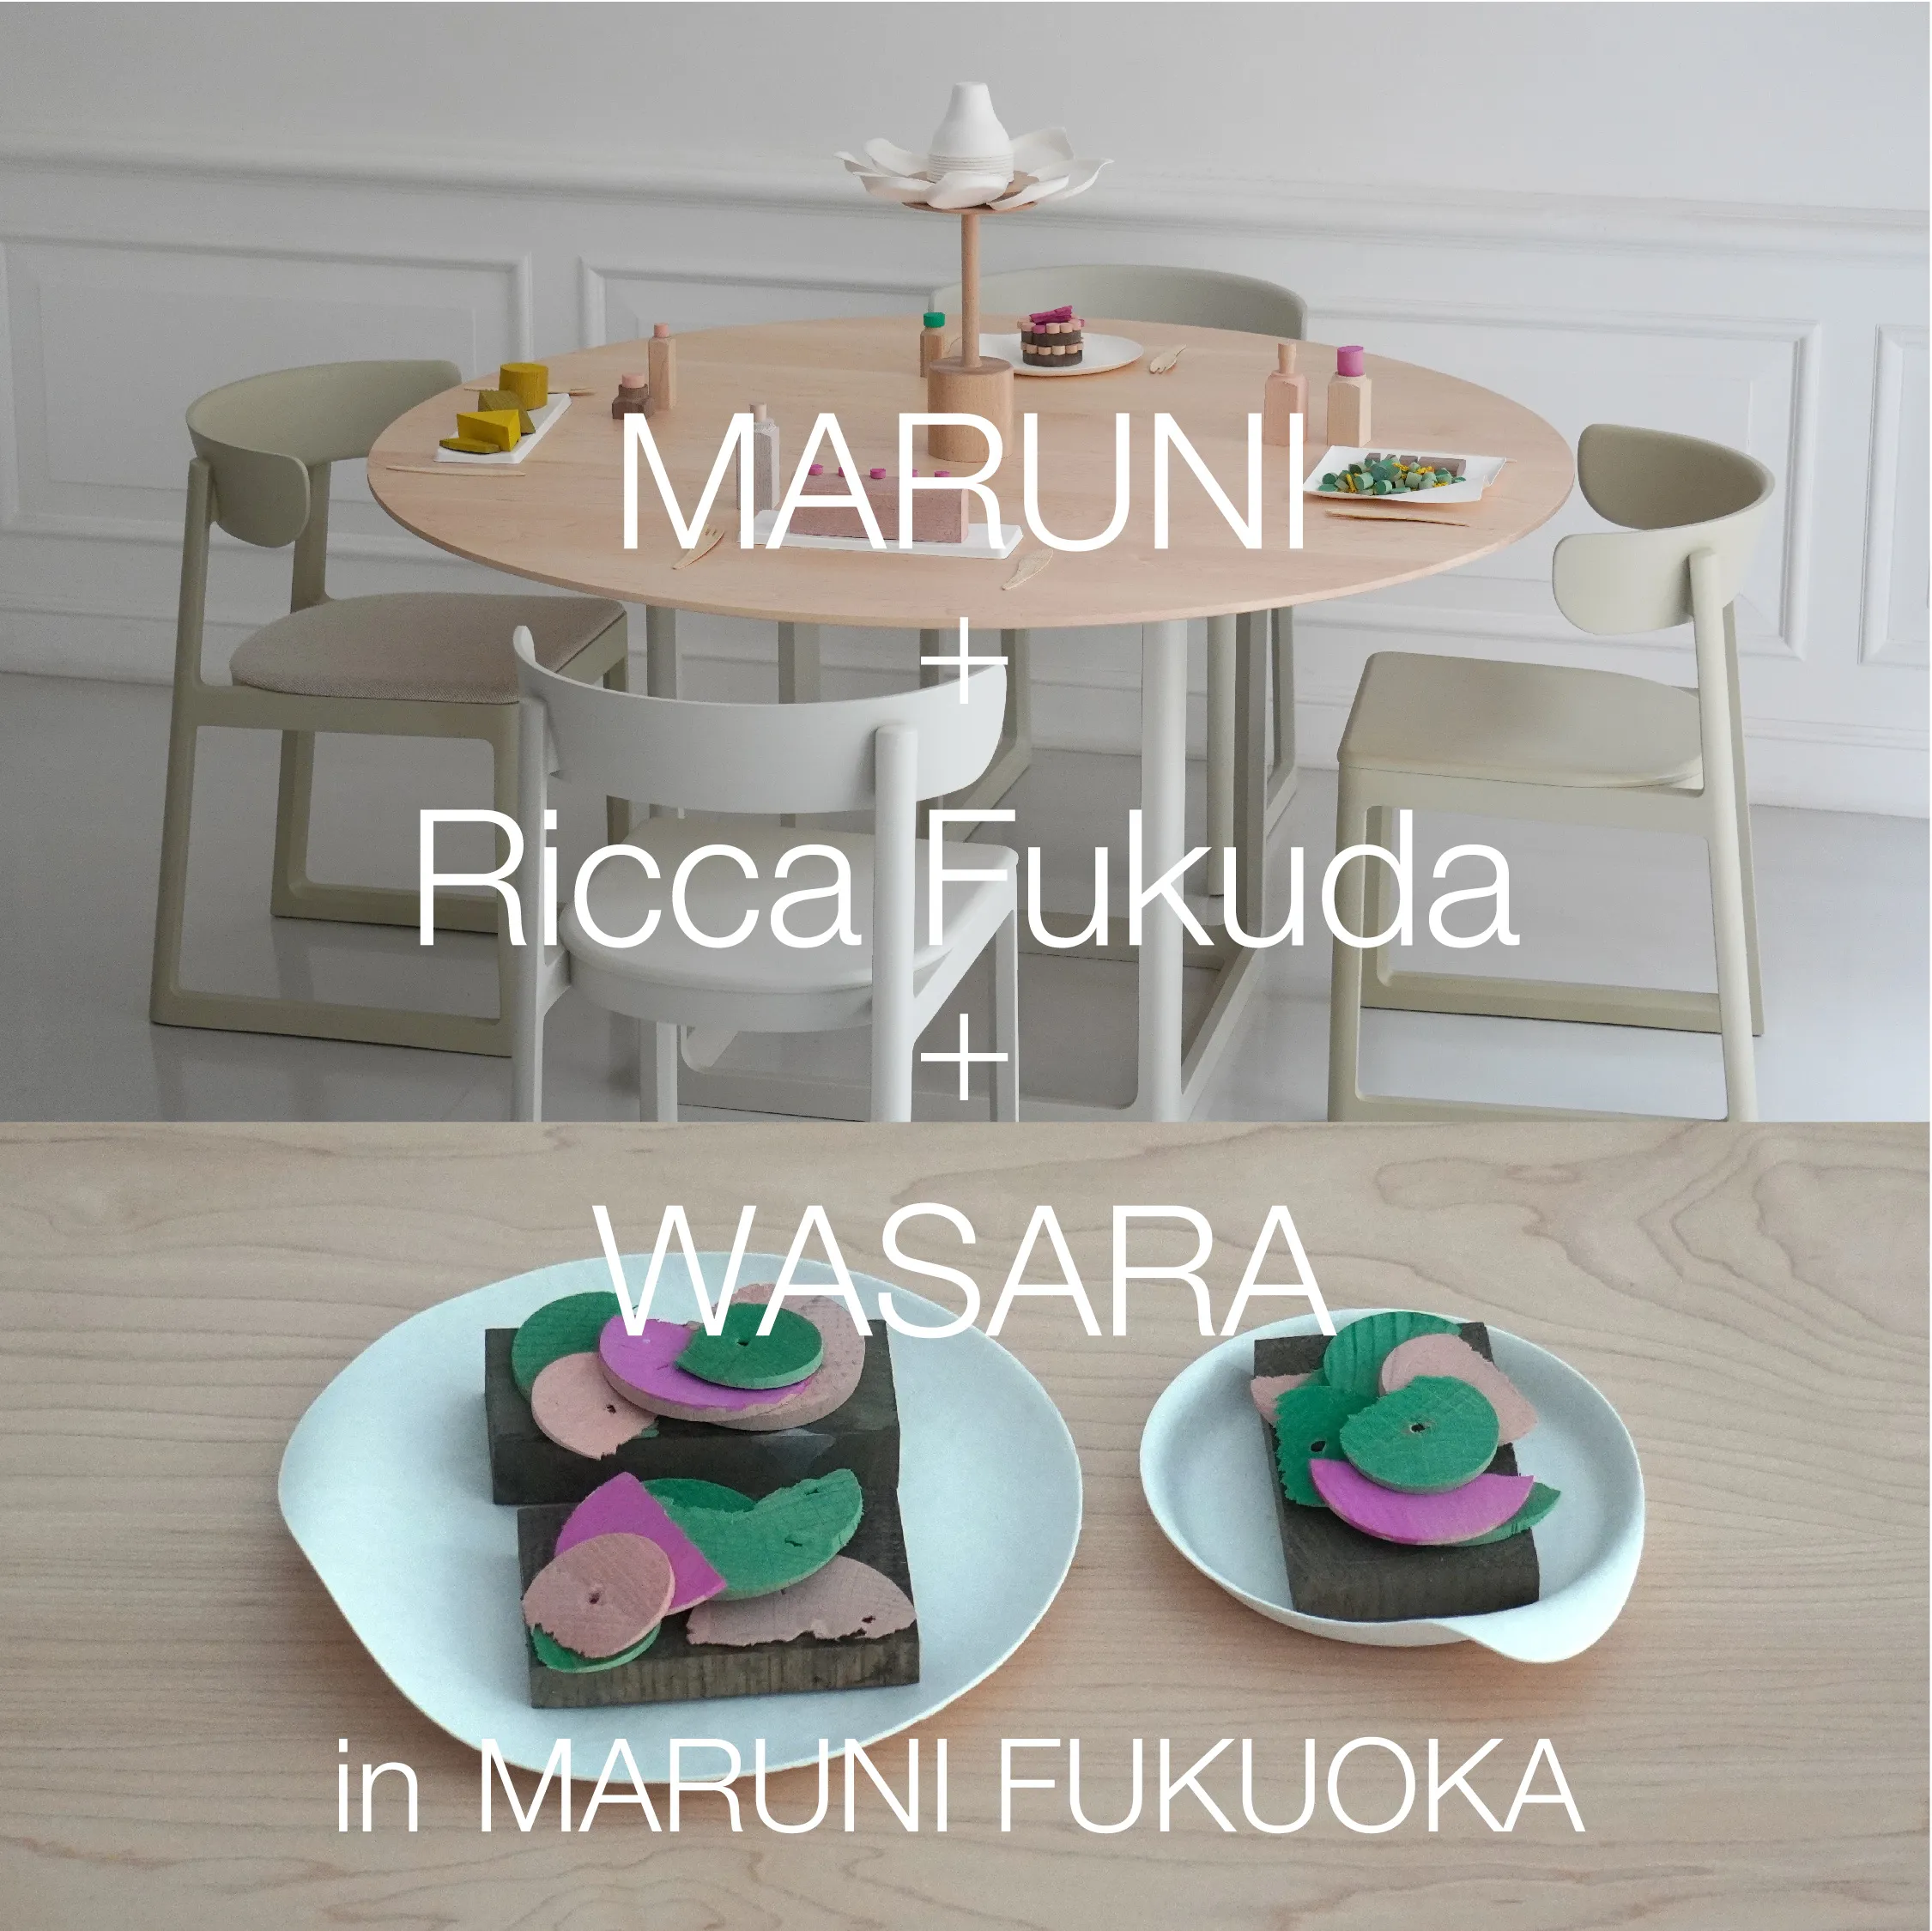 MARUNI + Ricca Fukuda + WASARA in MARUNI FUKUOKA / BBB&